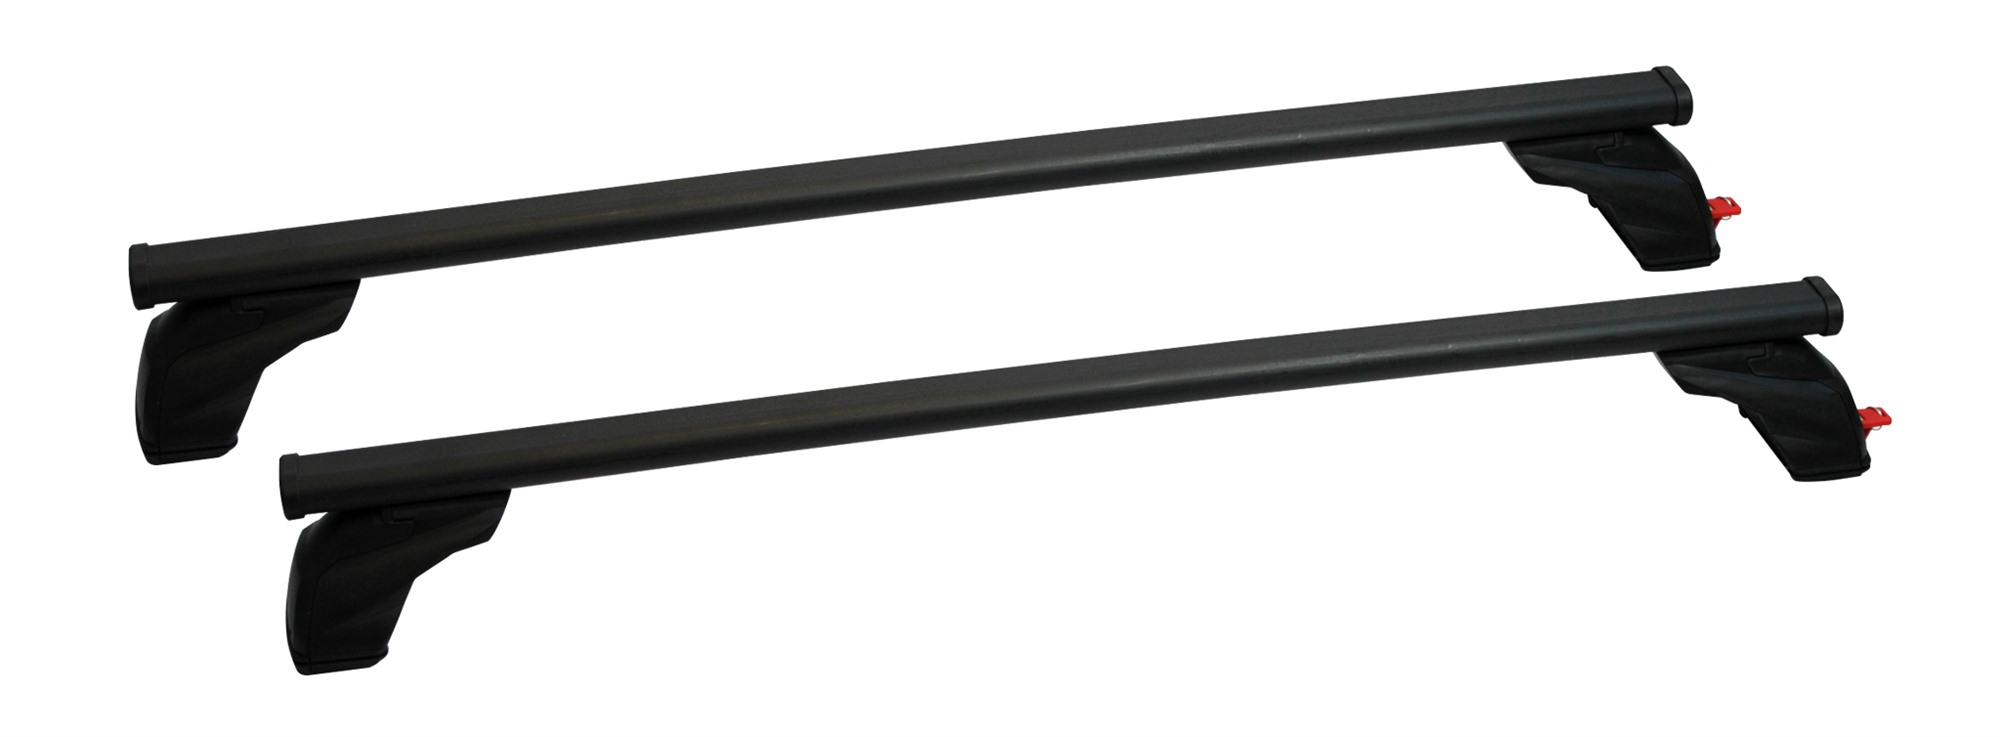 Σετ Μπάρες Οροφής Σιδερένιες με τα πόδια 127εκ για VW Golf 5 3D 2003-2008 2τμχ Pacific G3